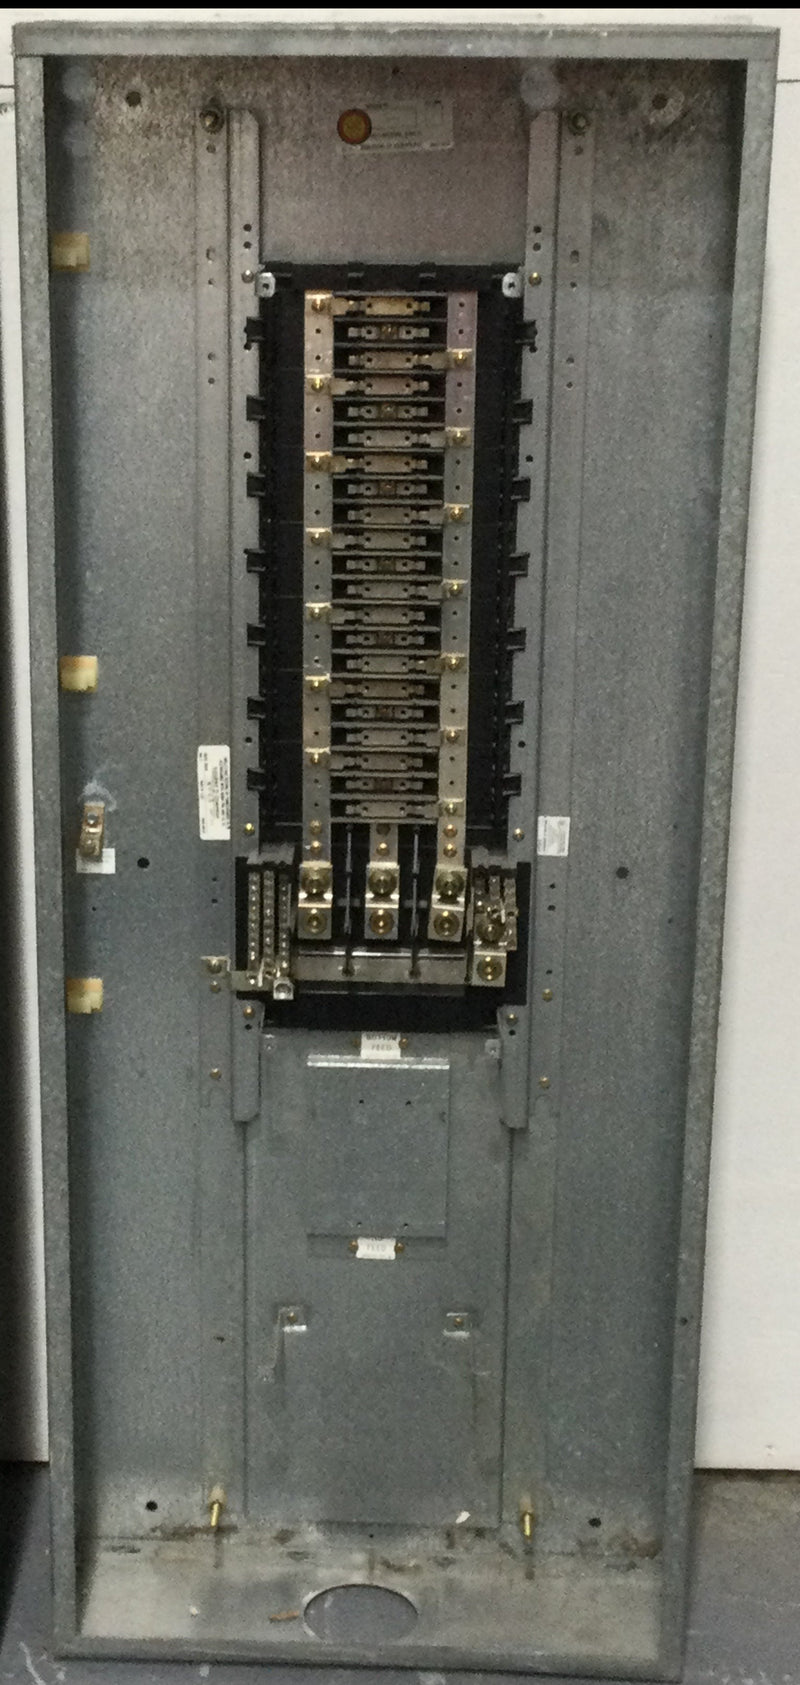 Square D NQOD442L225CU 225 Amp 240 Volt 3 Ph/4 Wire Type NQOD Panelboard w/o Main Breaker